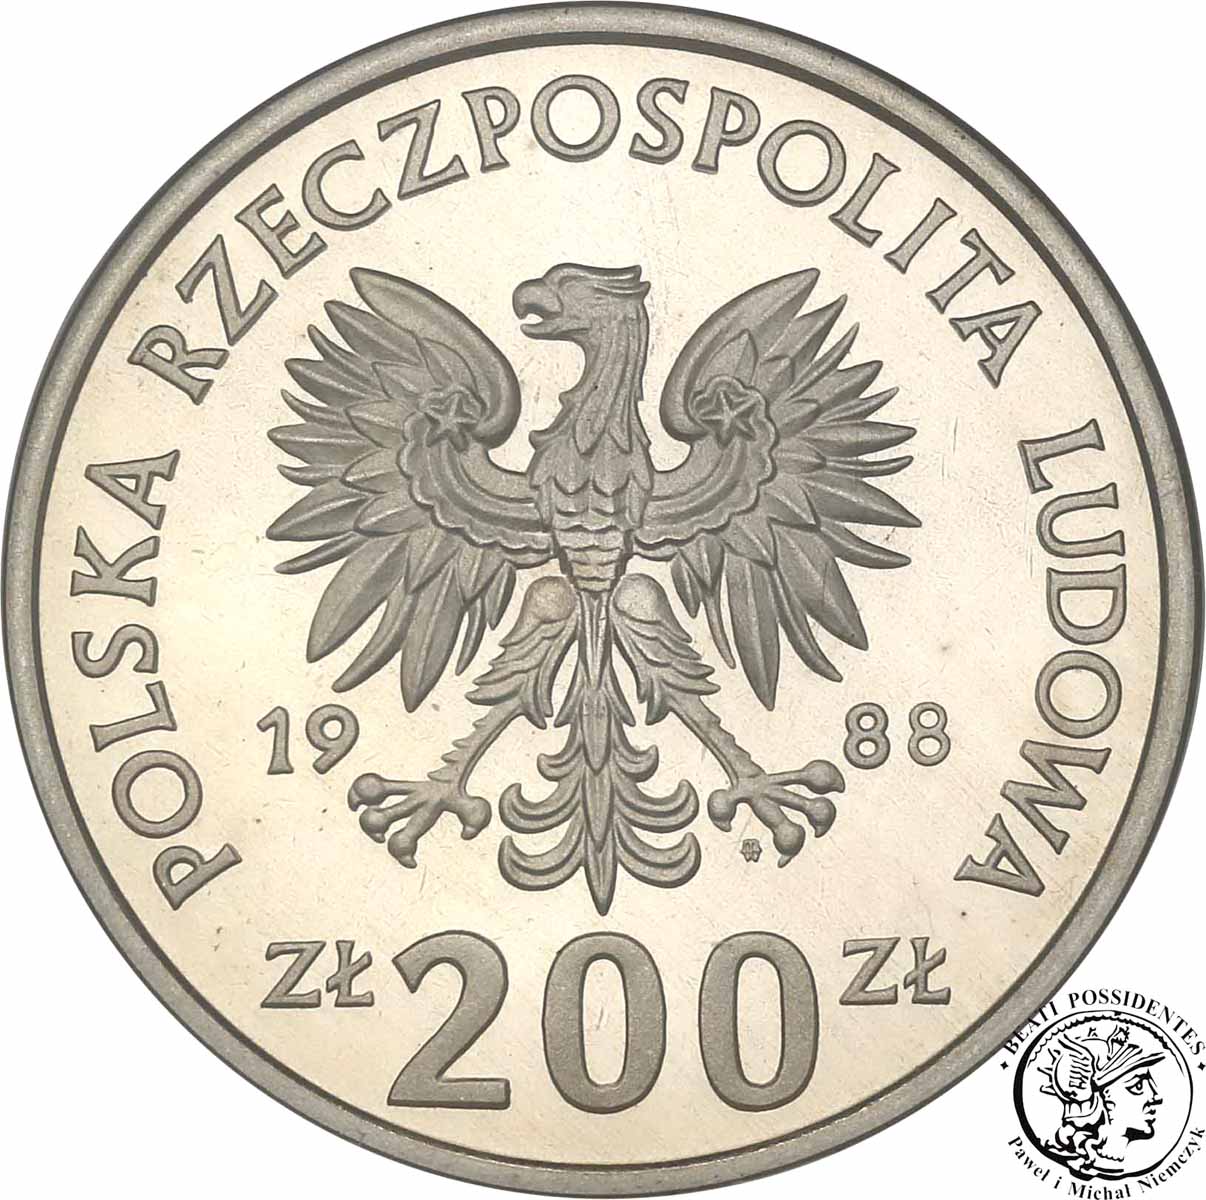 PRÓBA CuNi 200 złotych 1988 M Świata Włochy st. L